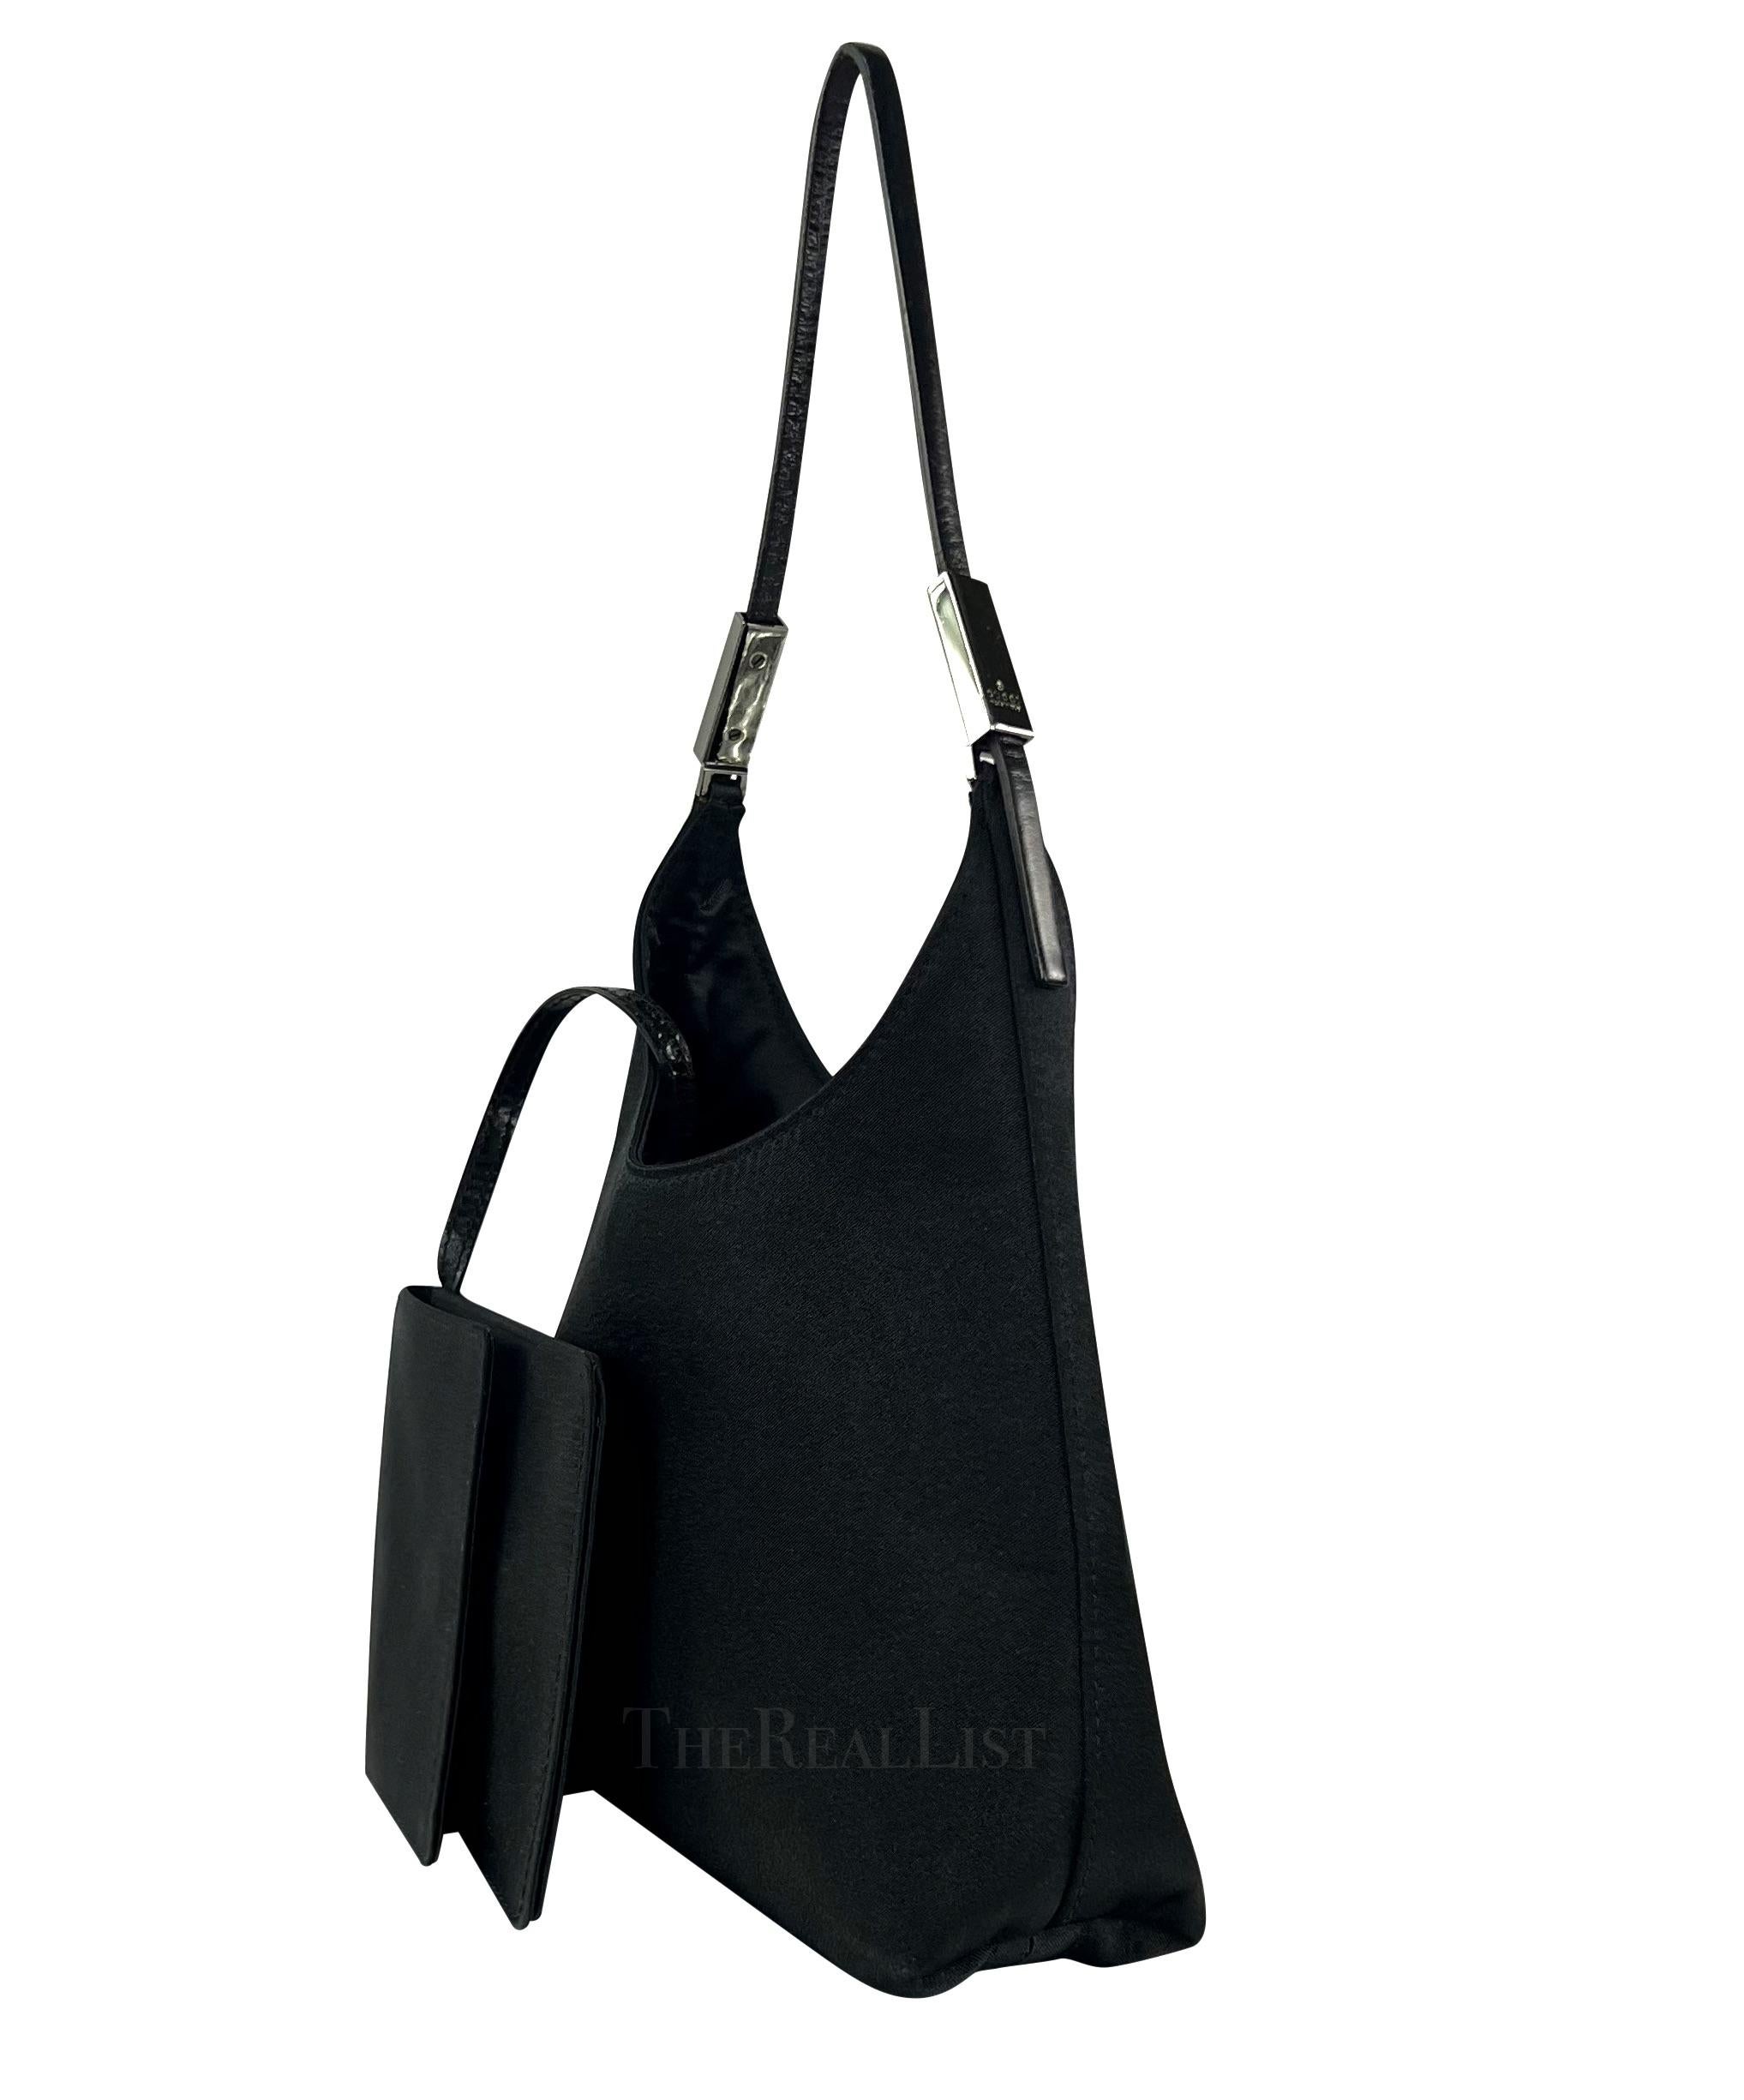 Wir präsentieren eine fabelhafte Mini-Abendtasche von Gucci aus schwarzem Satin, entworfen von Tom Ford. Diese Mini-Tasche fängt die Essenz des Glamours der späten 1990er Jahre perfekt ein und ist das ultimative Accessoire für Ihre unvergesslichen